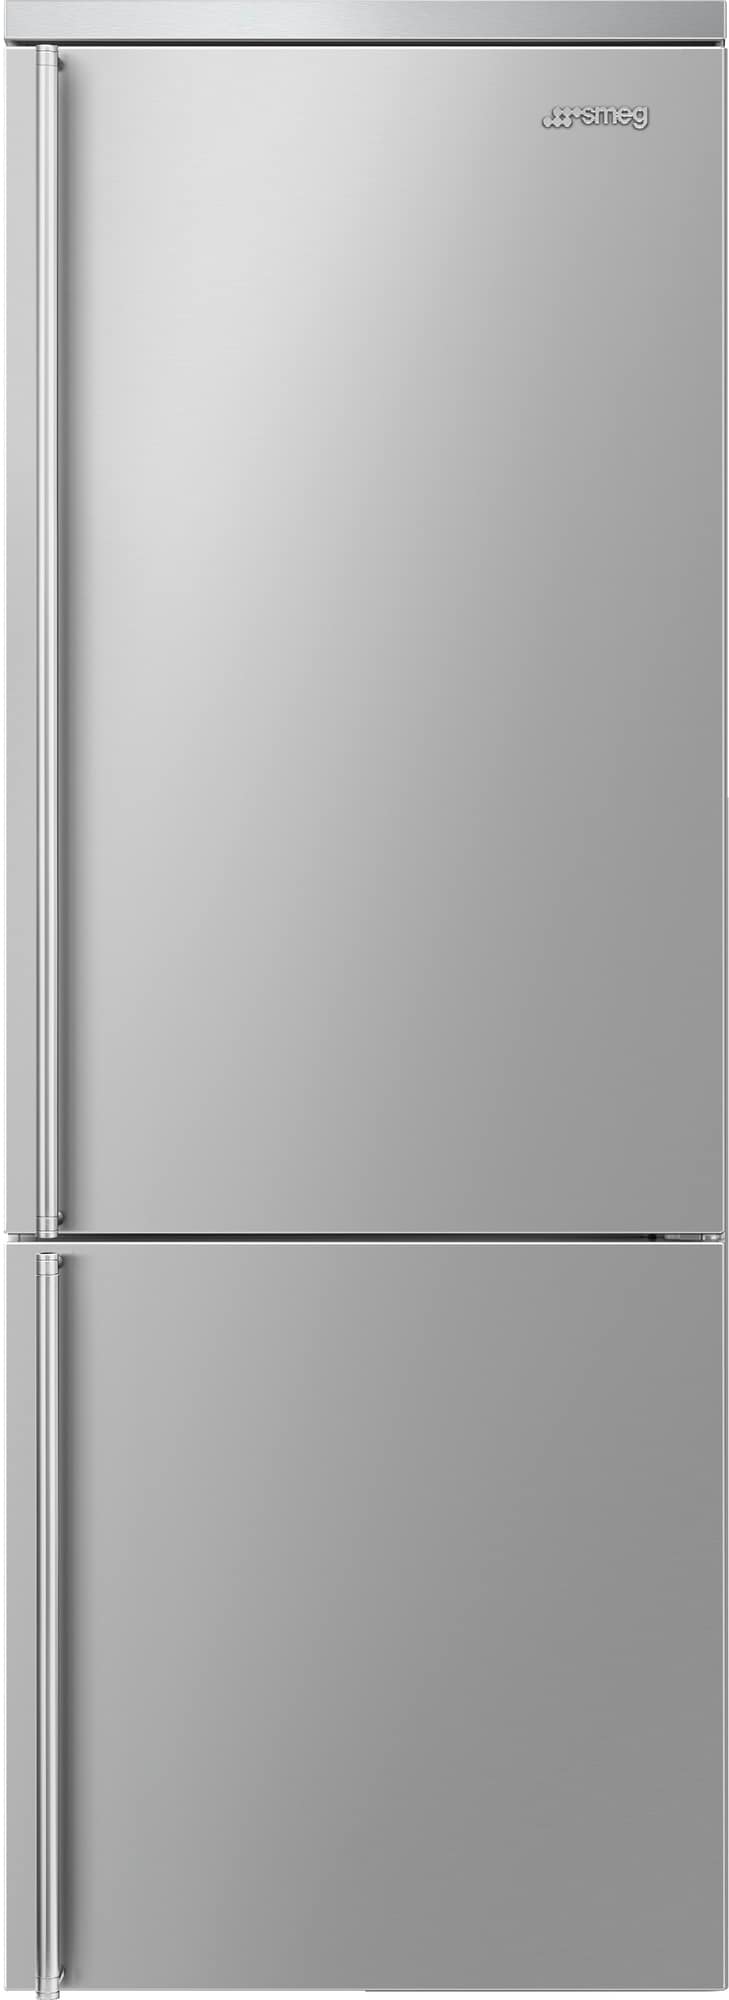 Smeg Classic jääkaappipakastin FA3905RX (ruostumaton teräs) - Gigantti  verkkokauppa